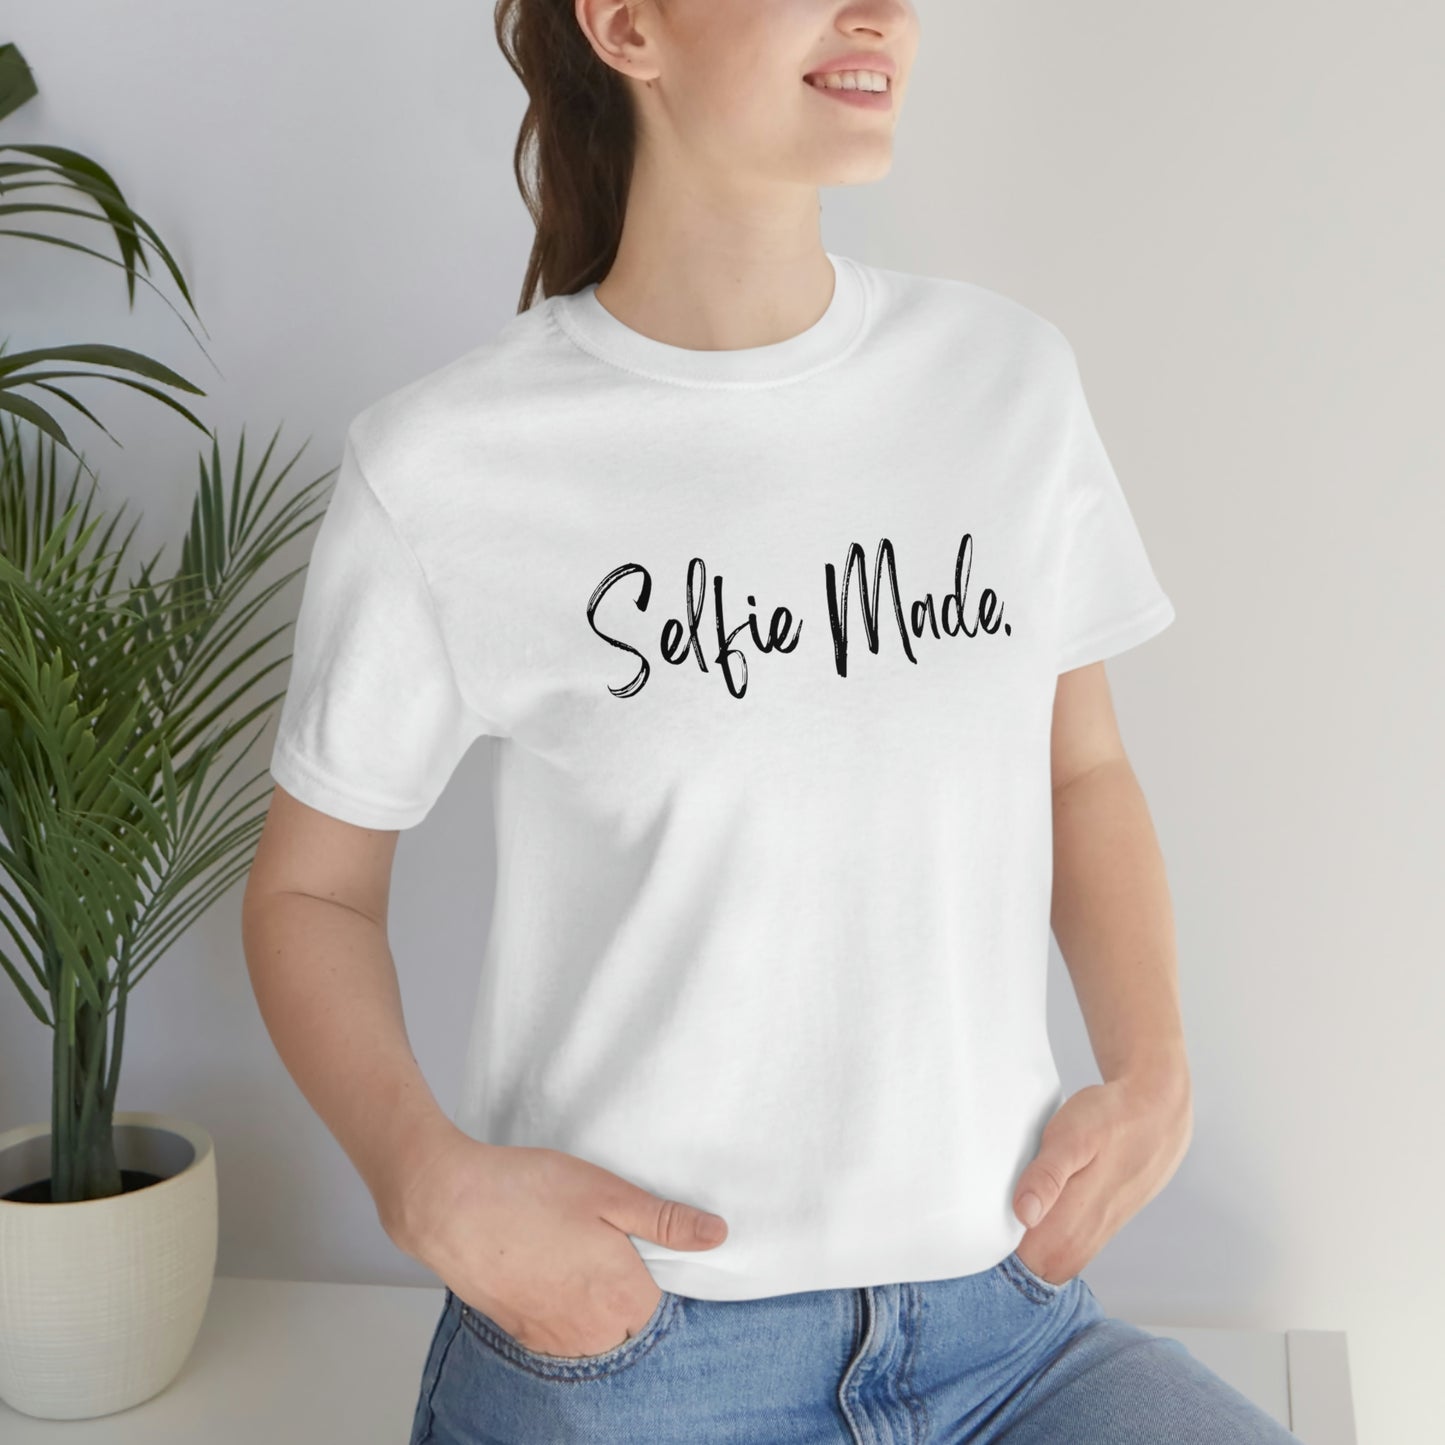 Selfie Made Women's T-Shirts